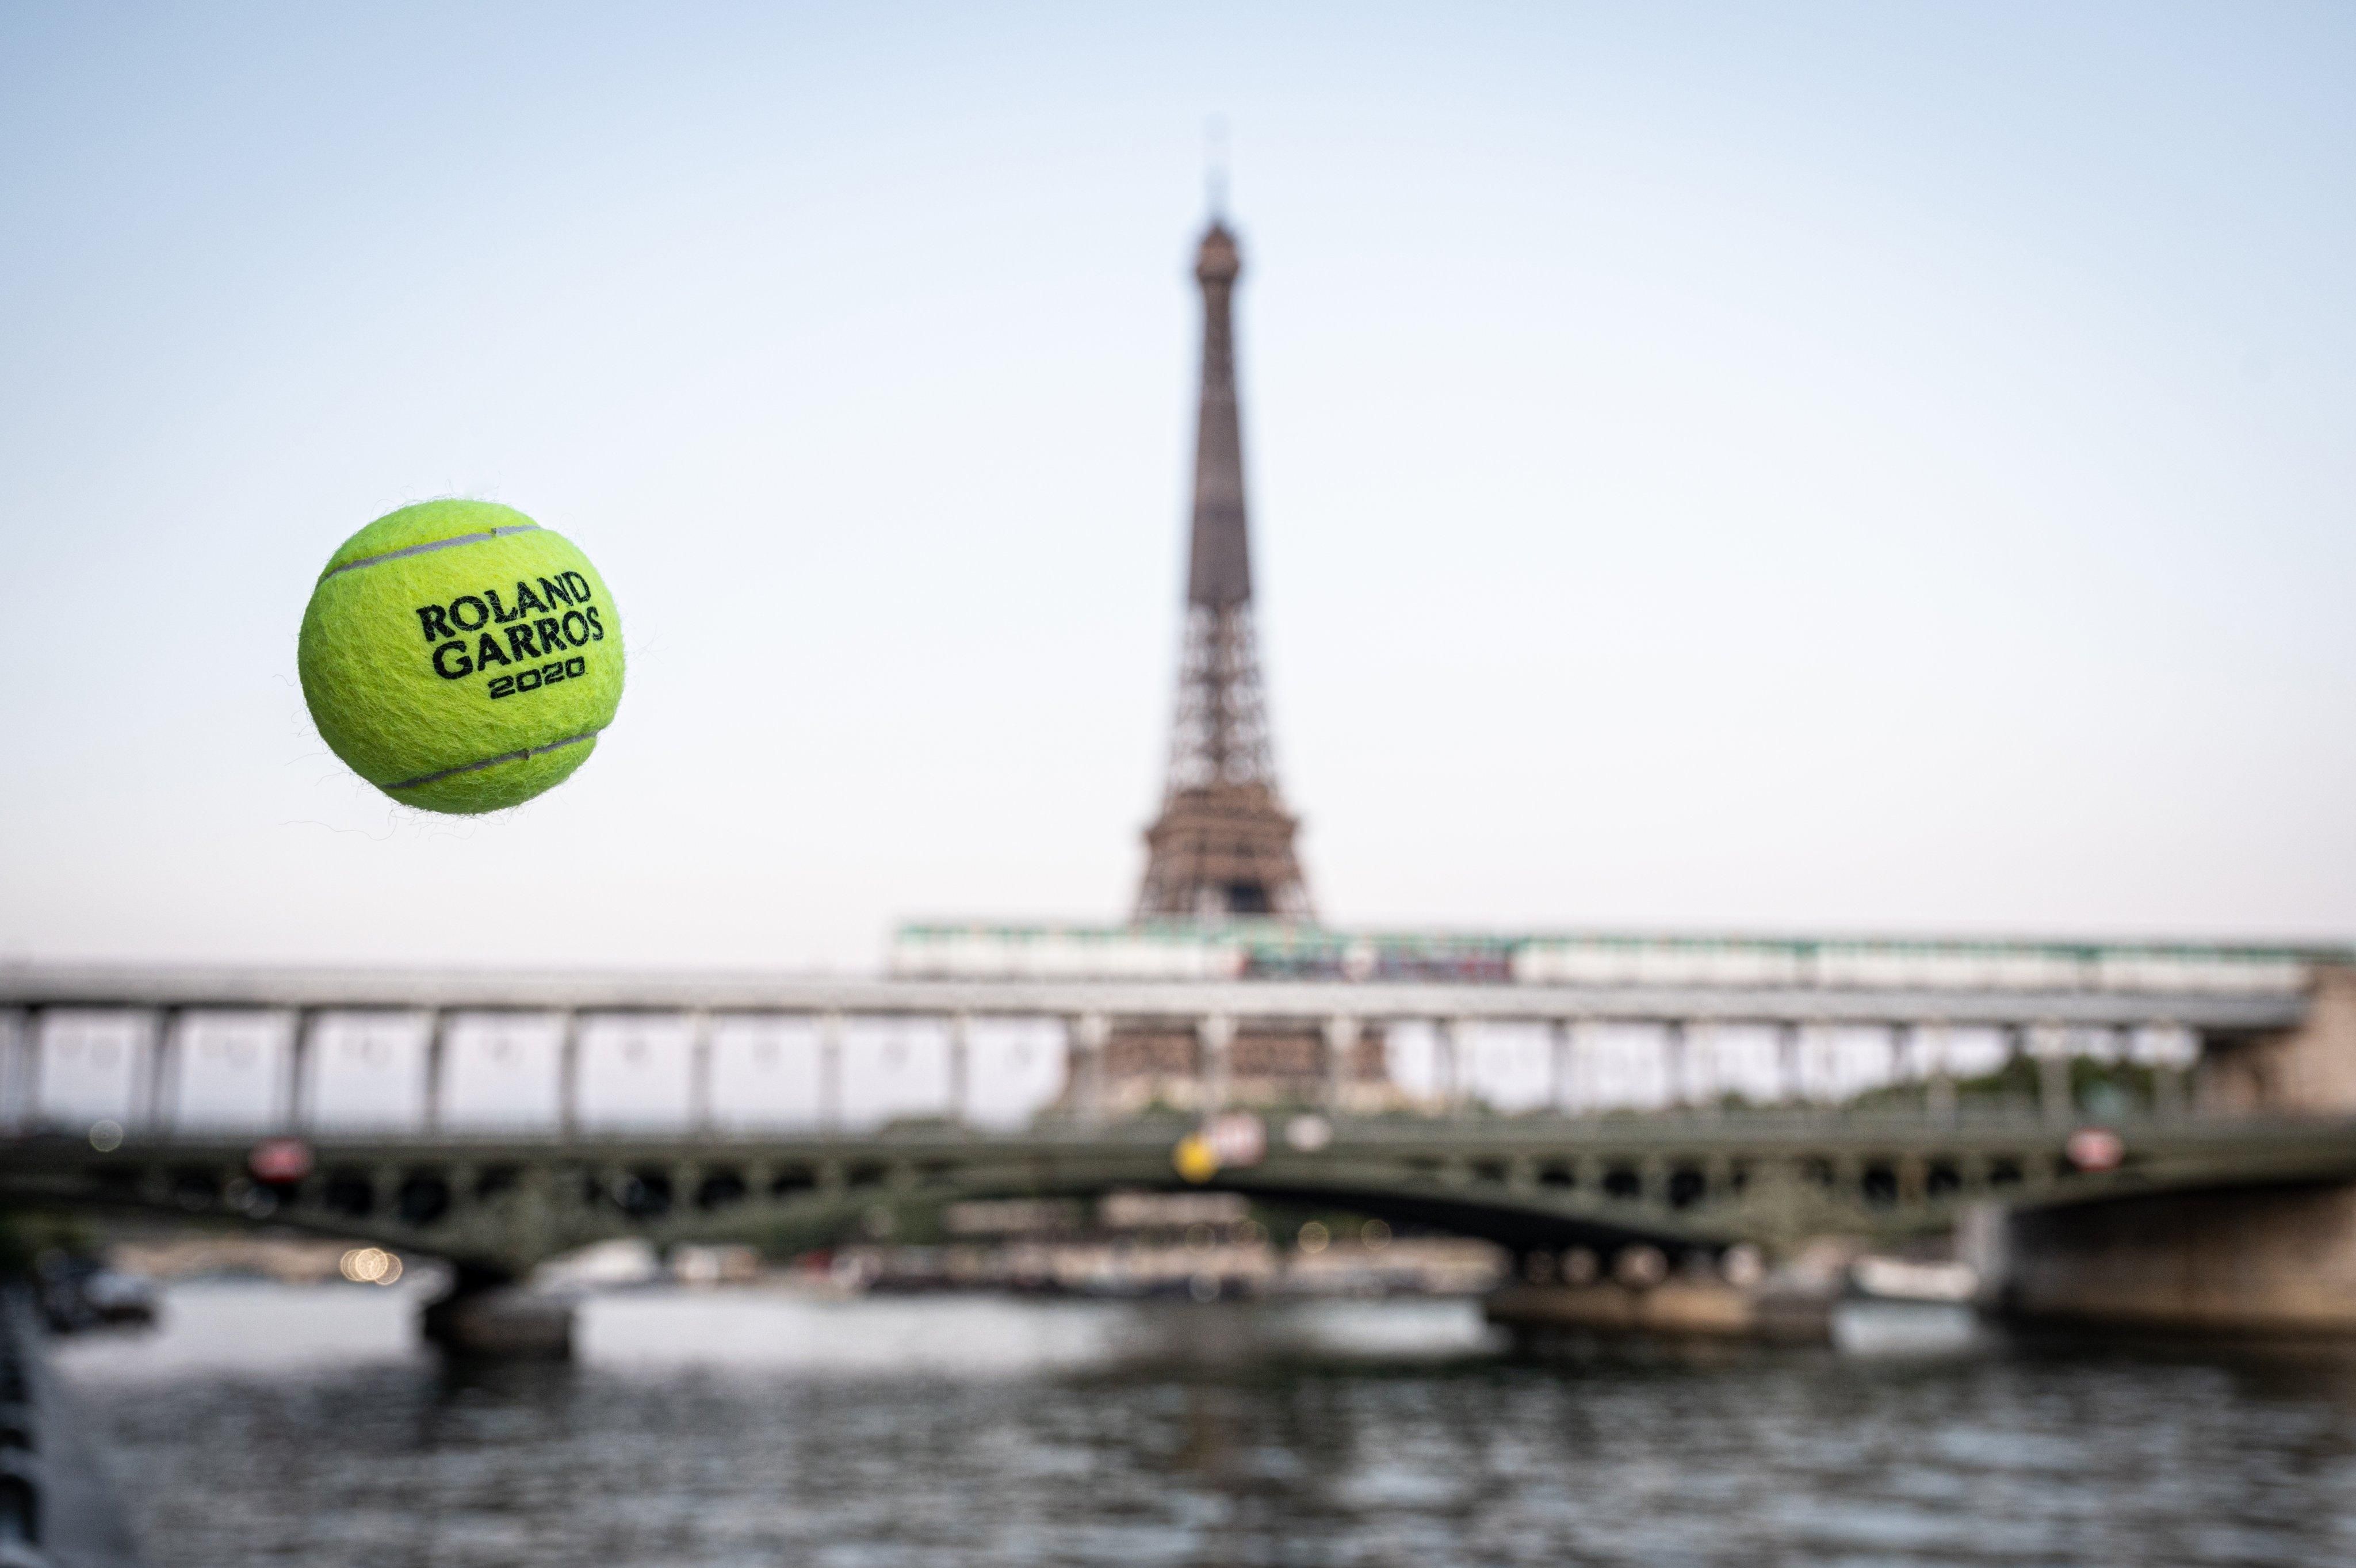 Организаторы "Ролан Гаррос" резко изменили призовые за турнир: сколько получат теннисисты